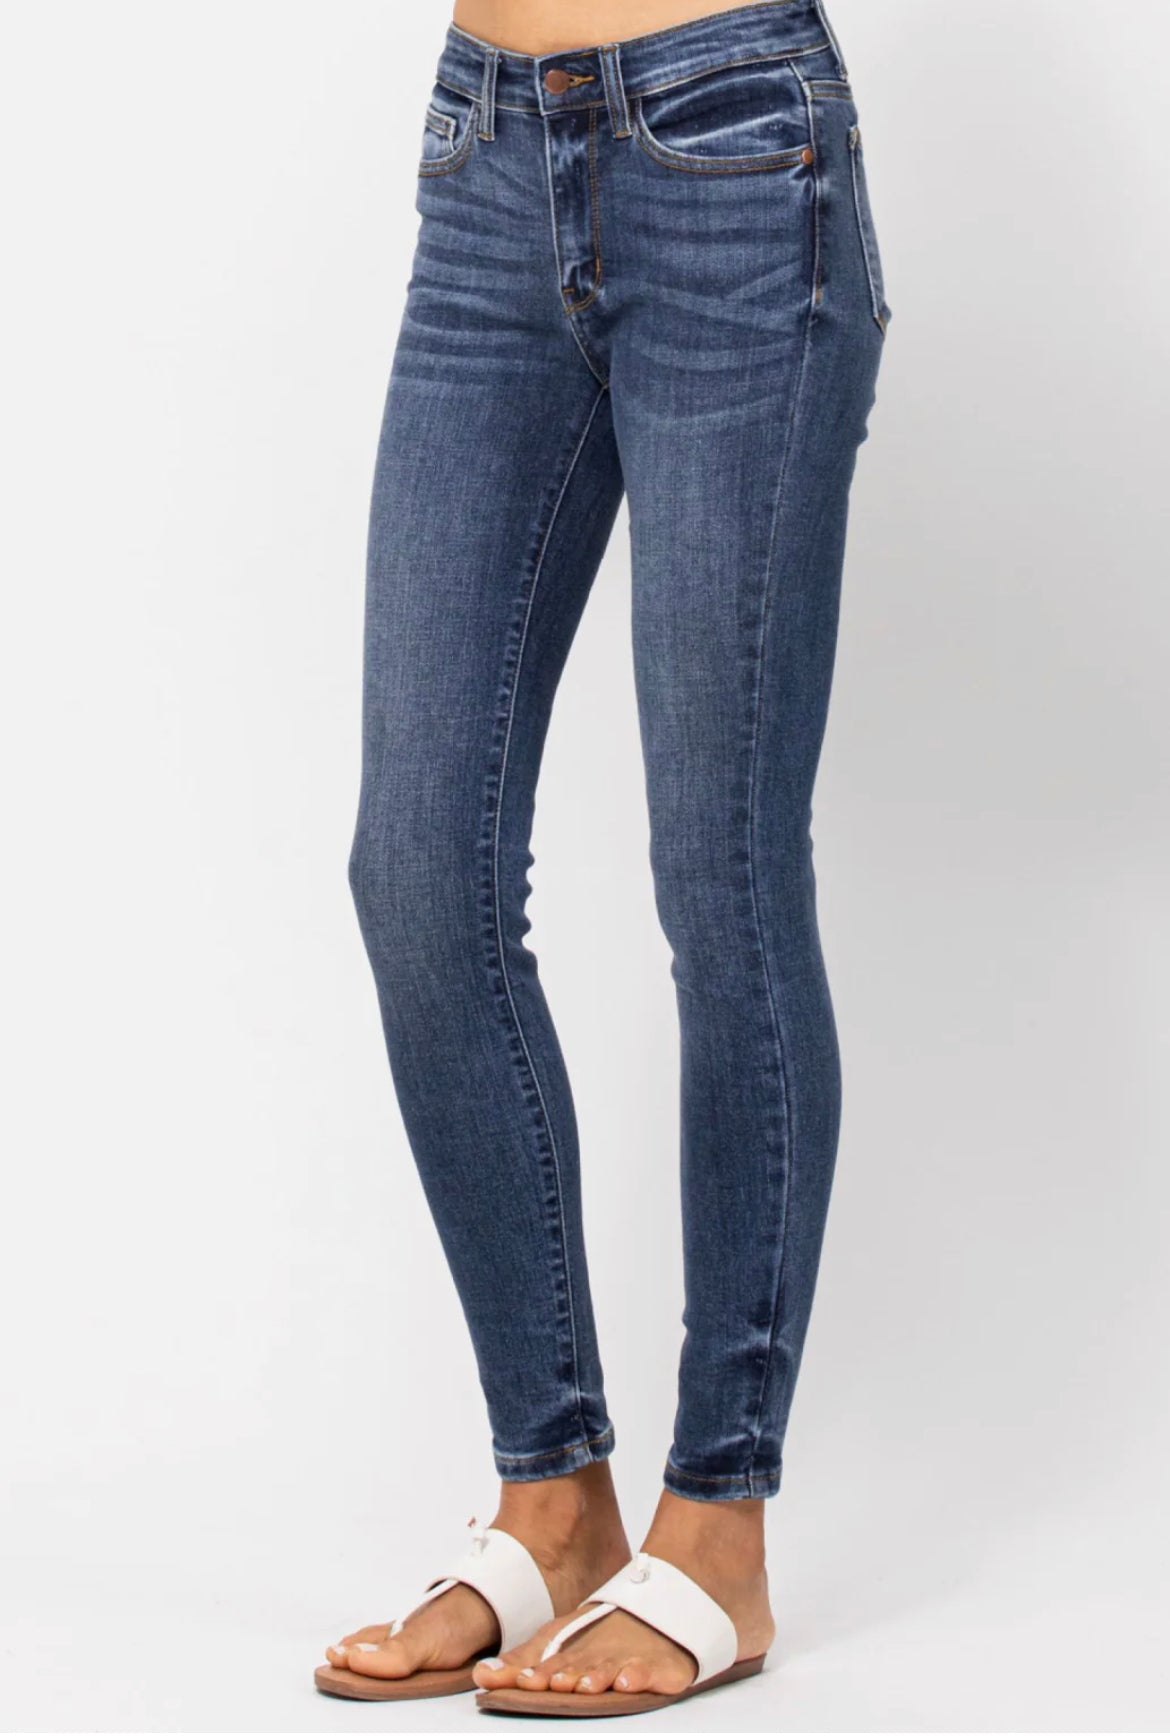 Judy Blue Jennifer Mid-Rise Skinny Jeans (JB 82252)